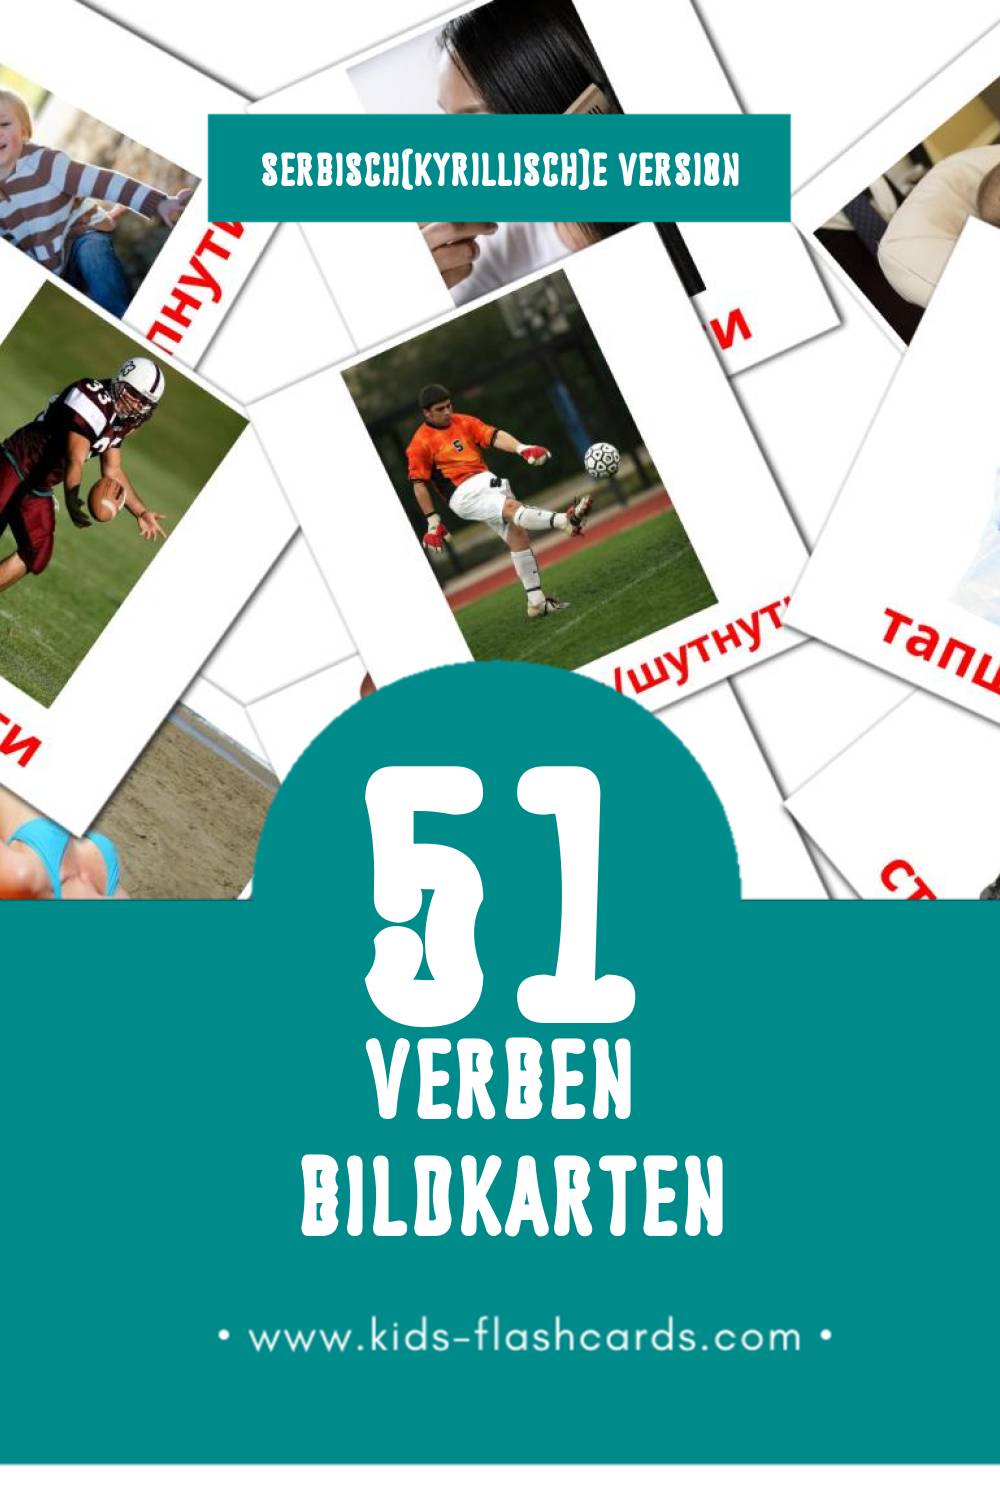 Visual Глаголи Flashcards für Kleinkinder (84 Karten in Serbisch(kyrillisch))